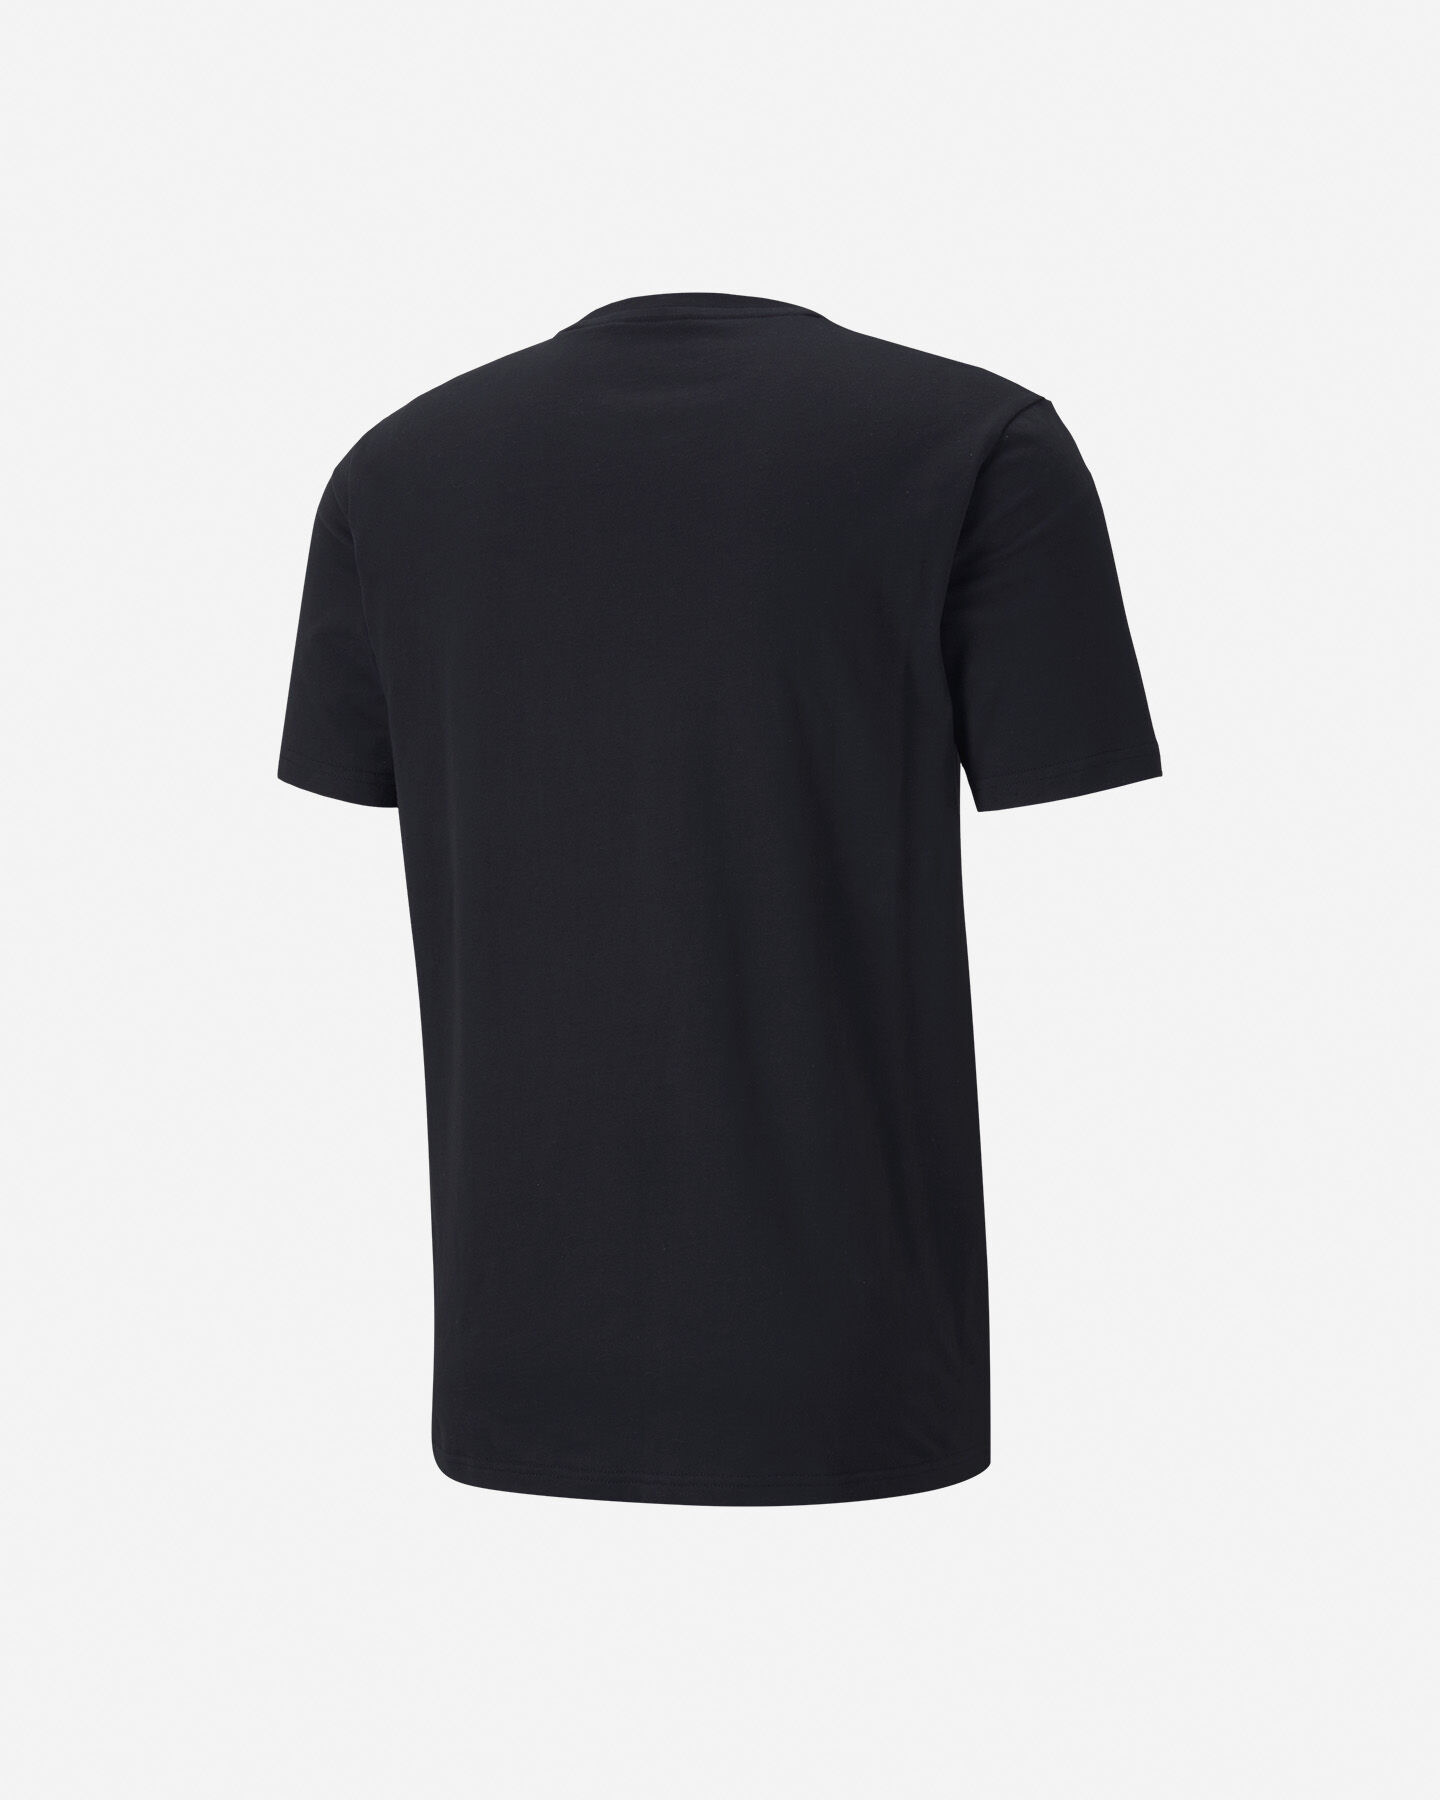  T-Shirt PUMA ATHTLETIC M S5235064|01|S scatto 1